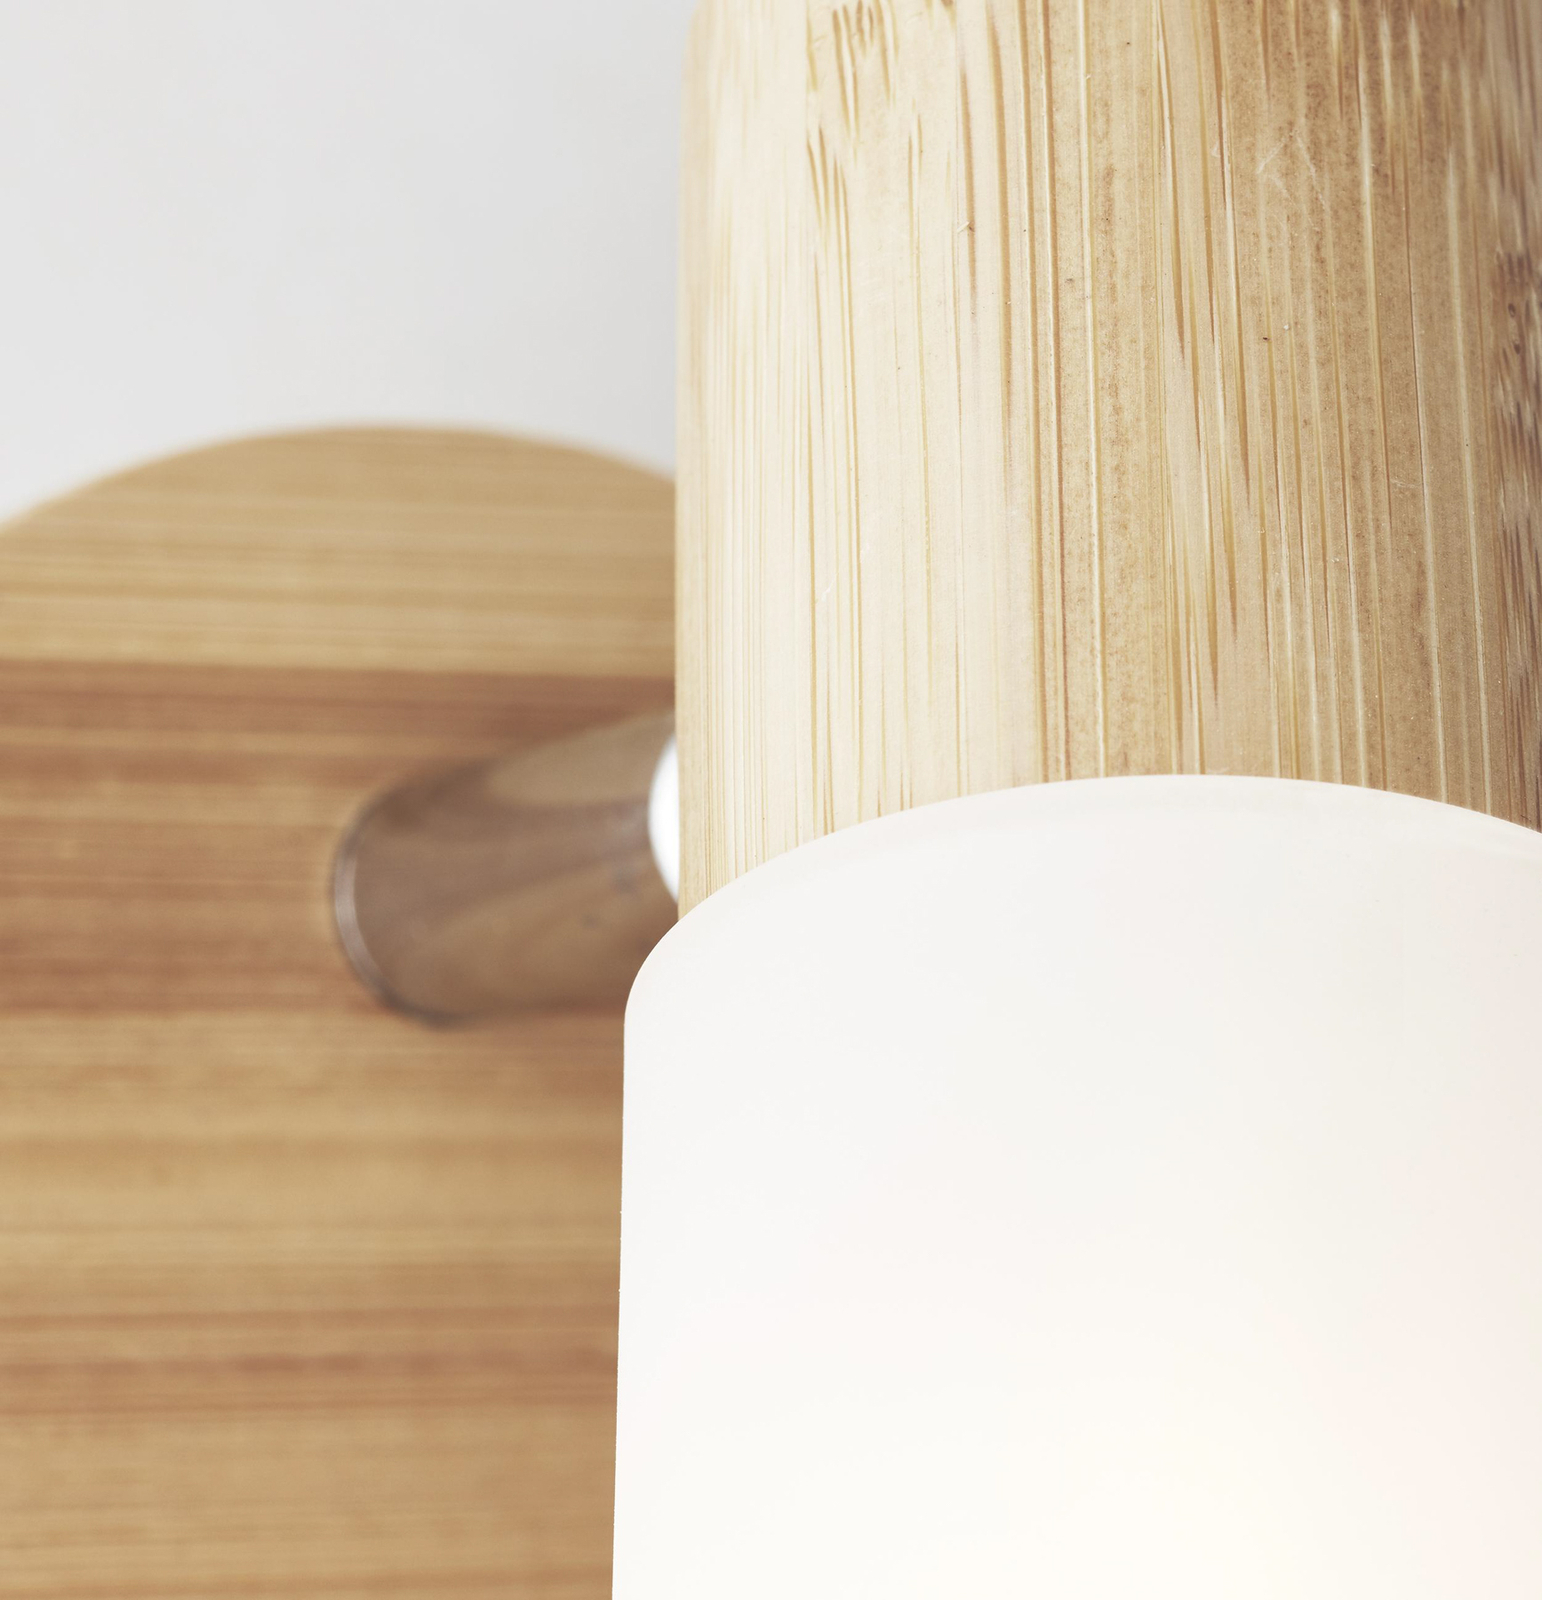 Babsan wandspot, Ø 10 cm, licht hout, bamboe